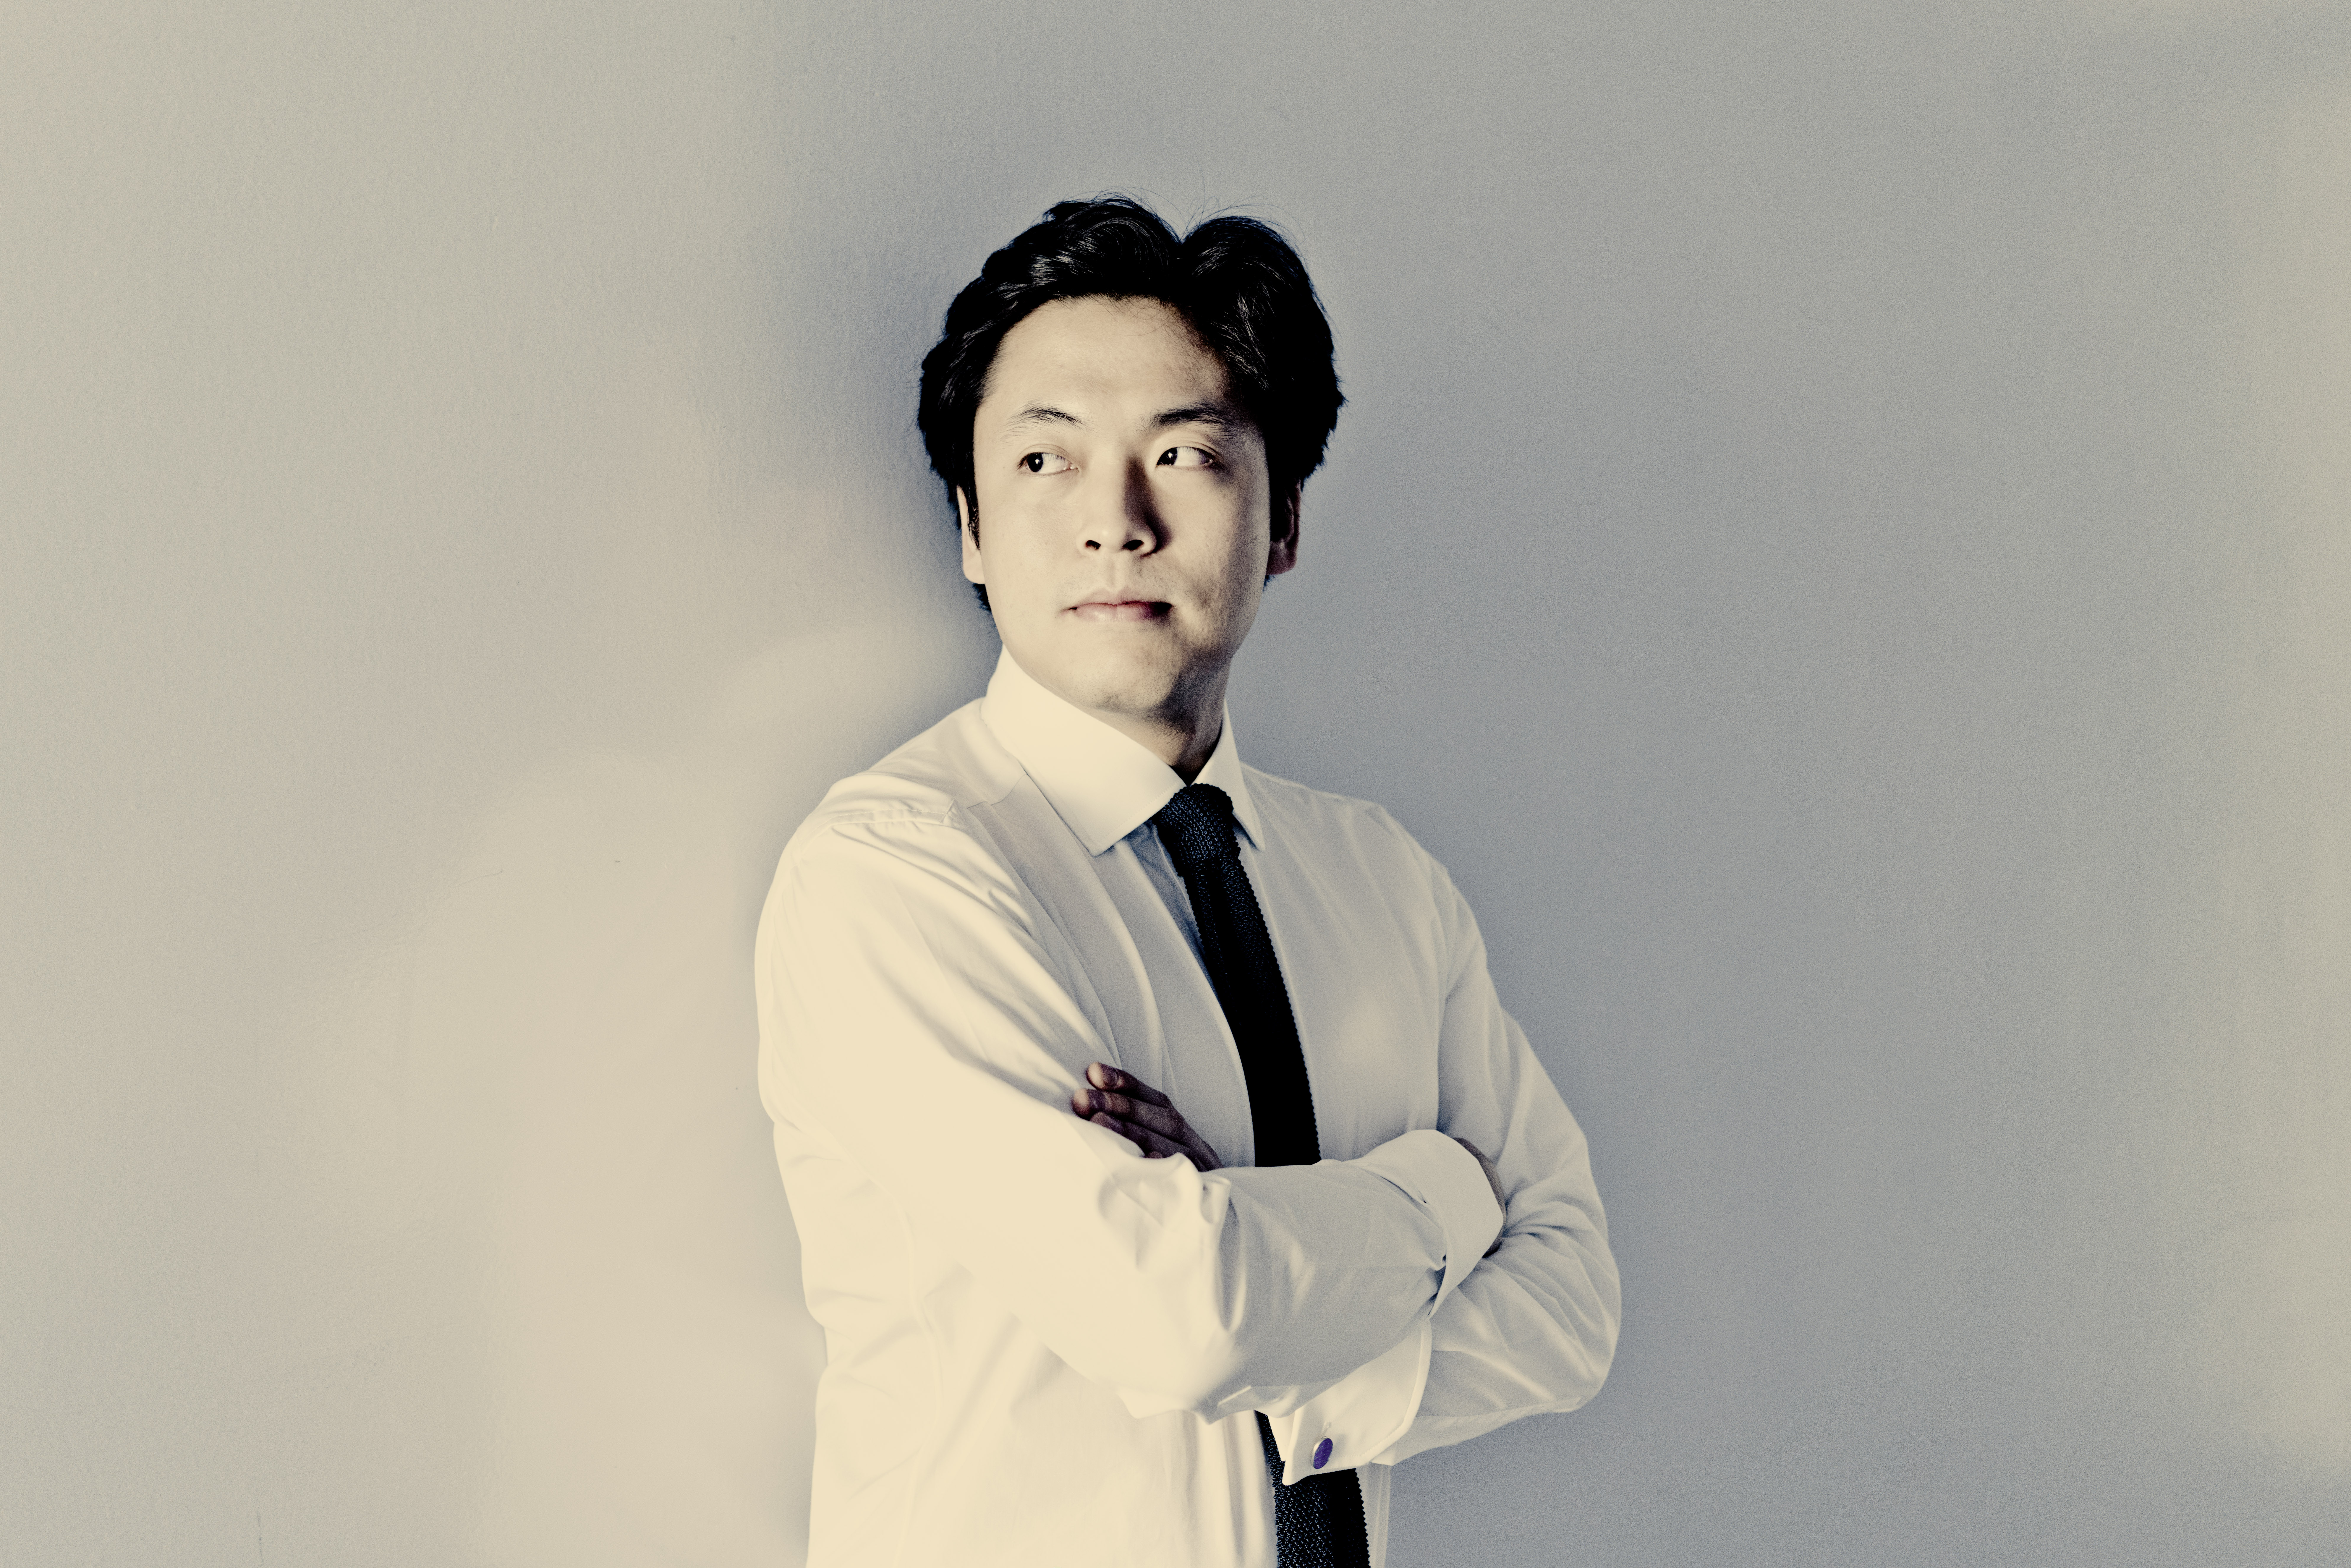 피아니스트 김선욱. 빈체로 제공